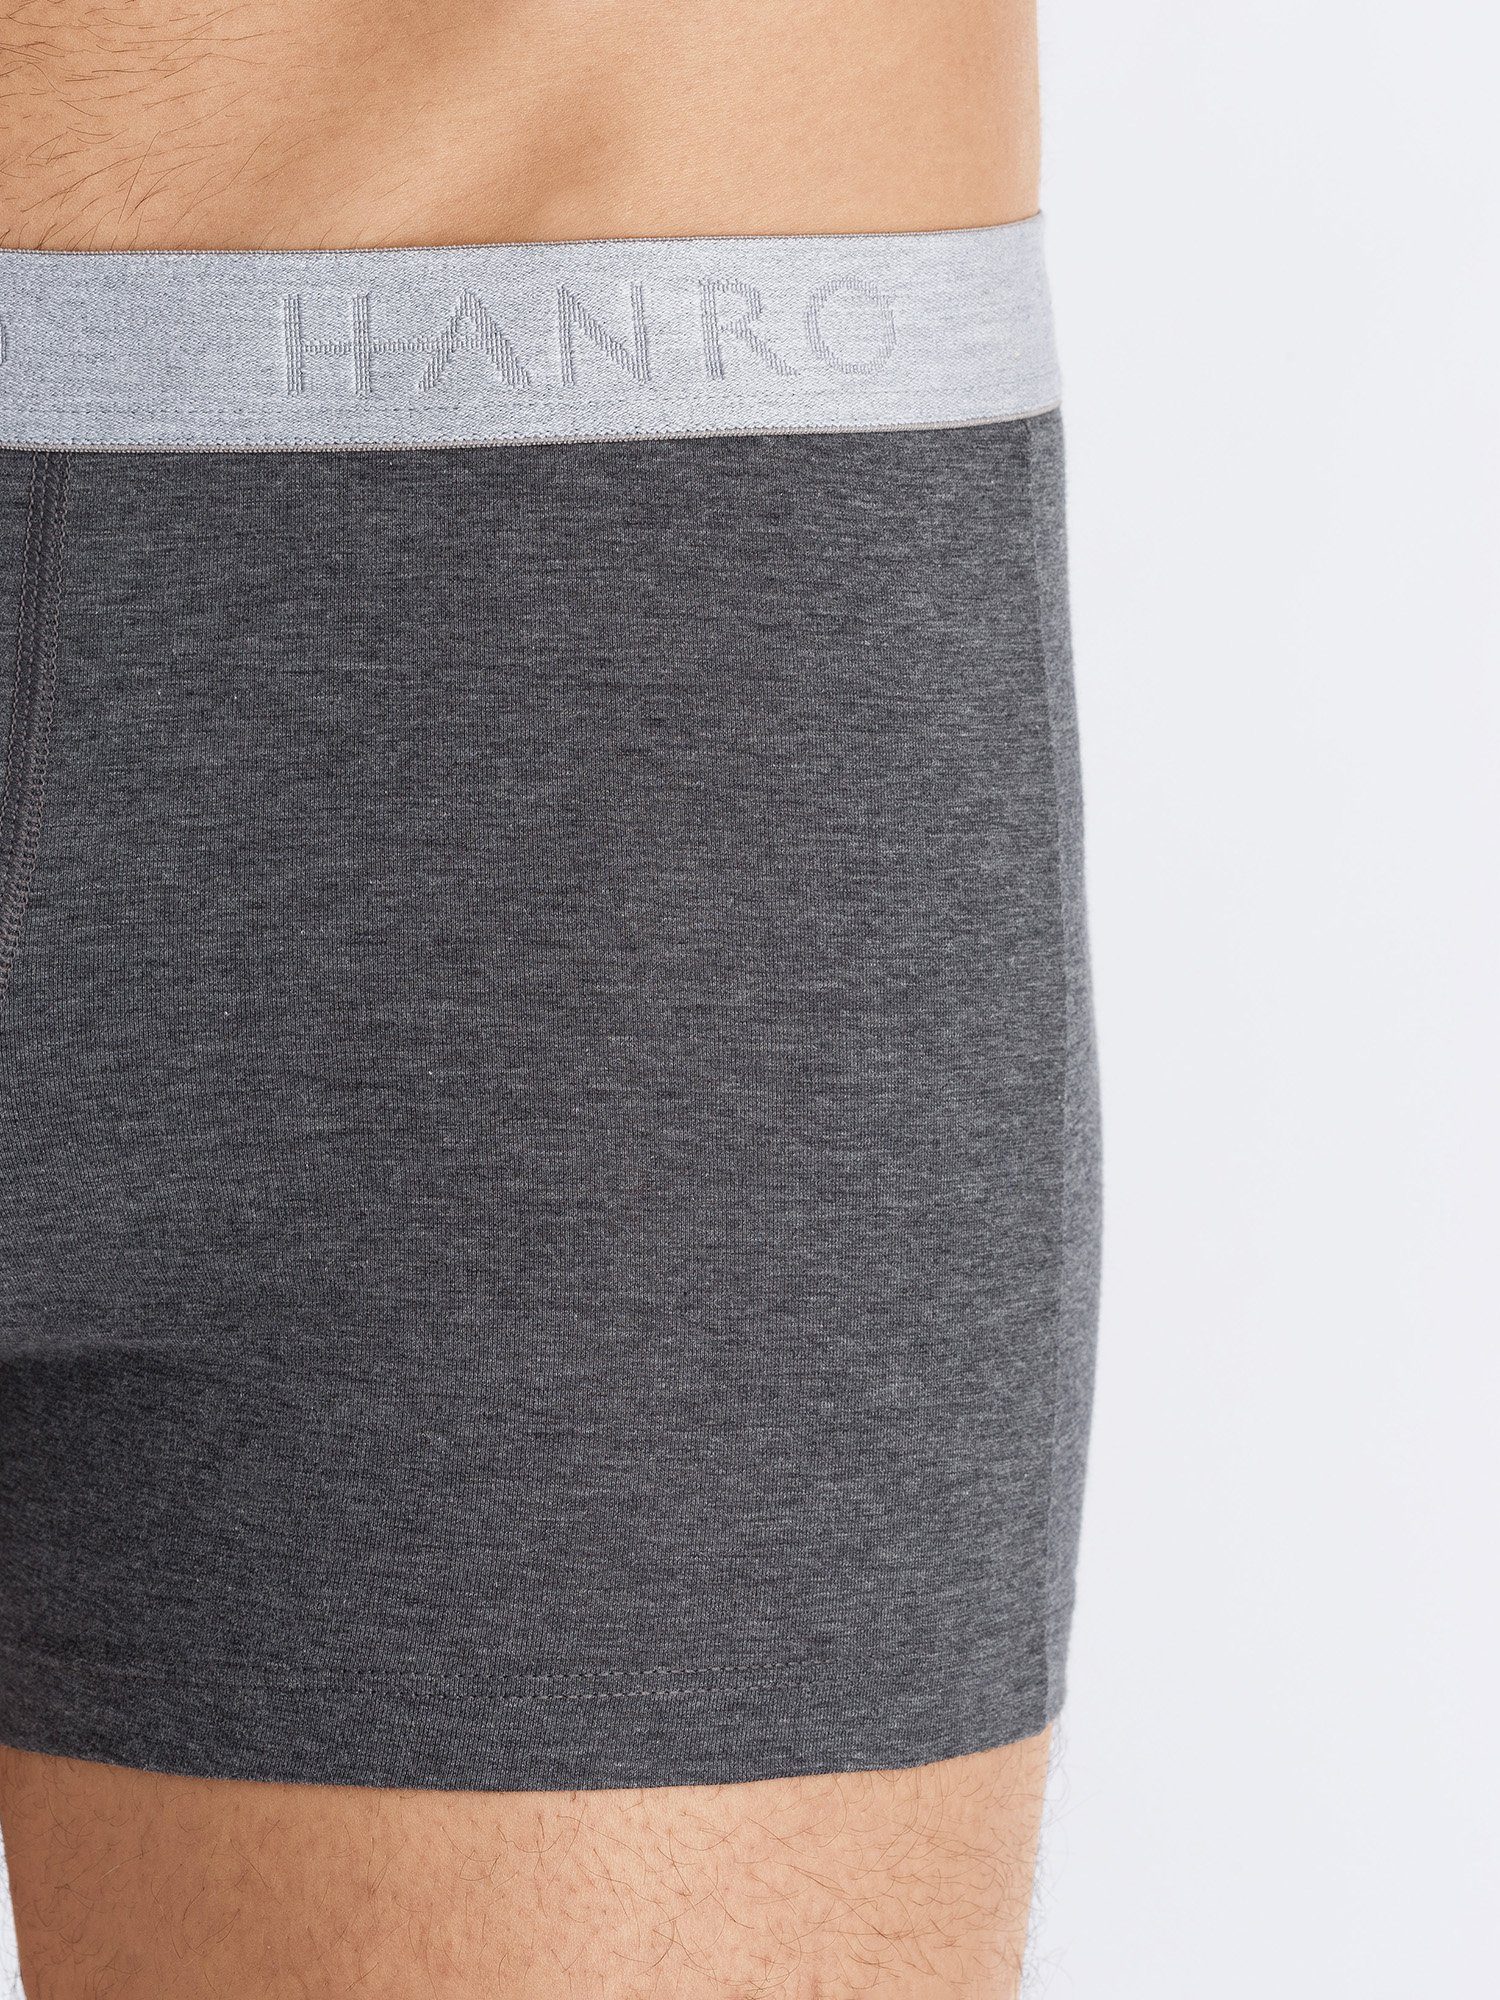 Retro Pants Cotton 2-Pack Essentials coal melange Hanro